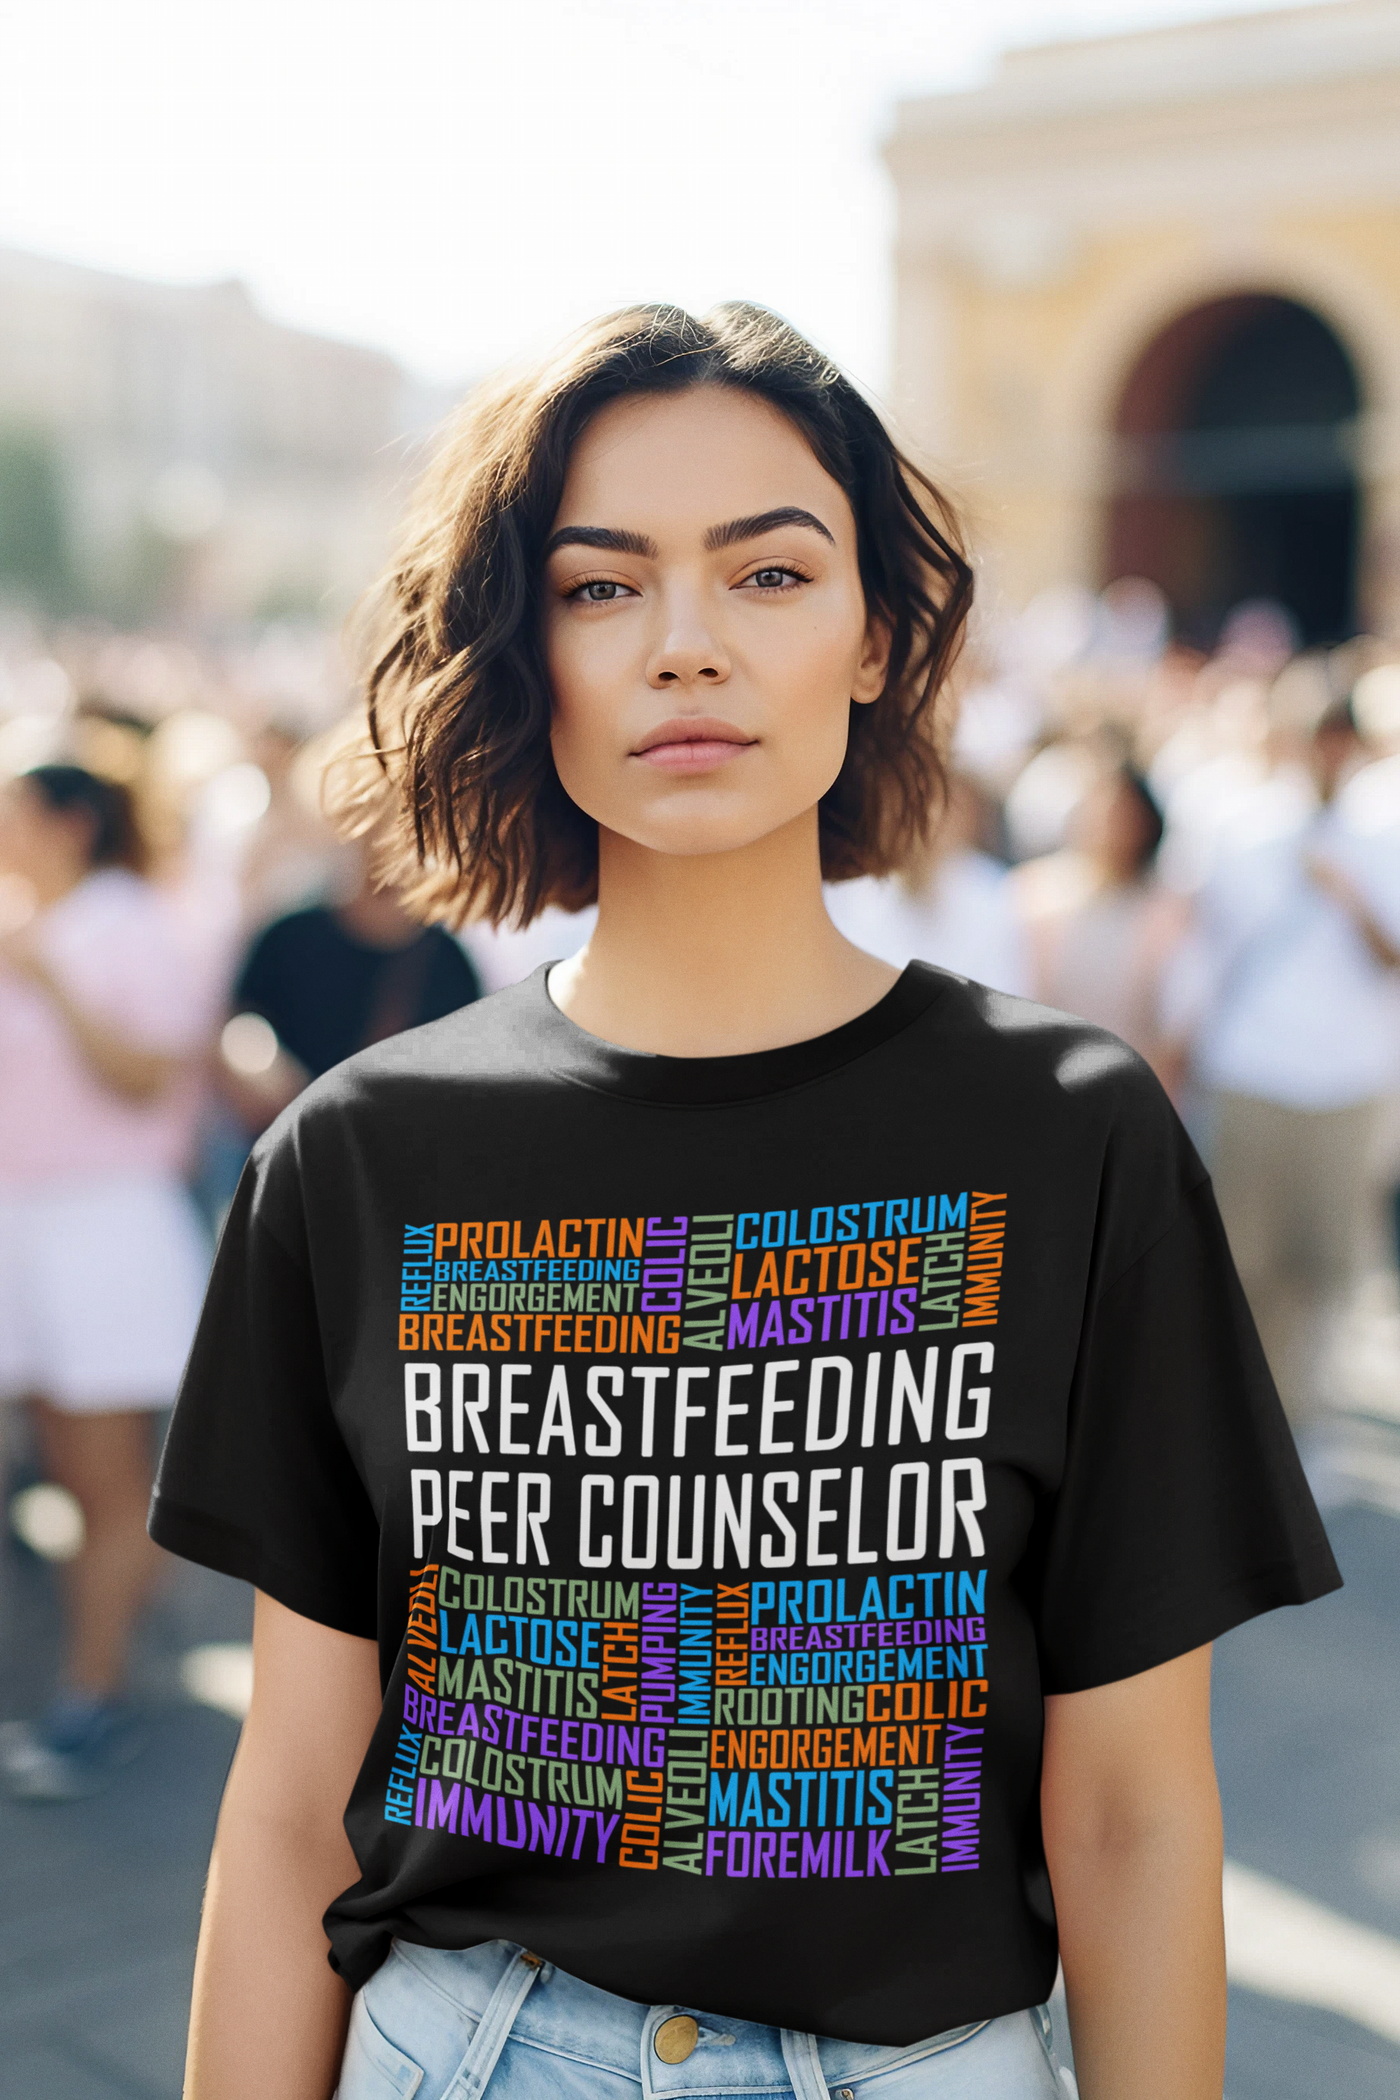 Breastfeeding Peer Counselor Words